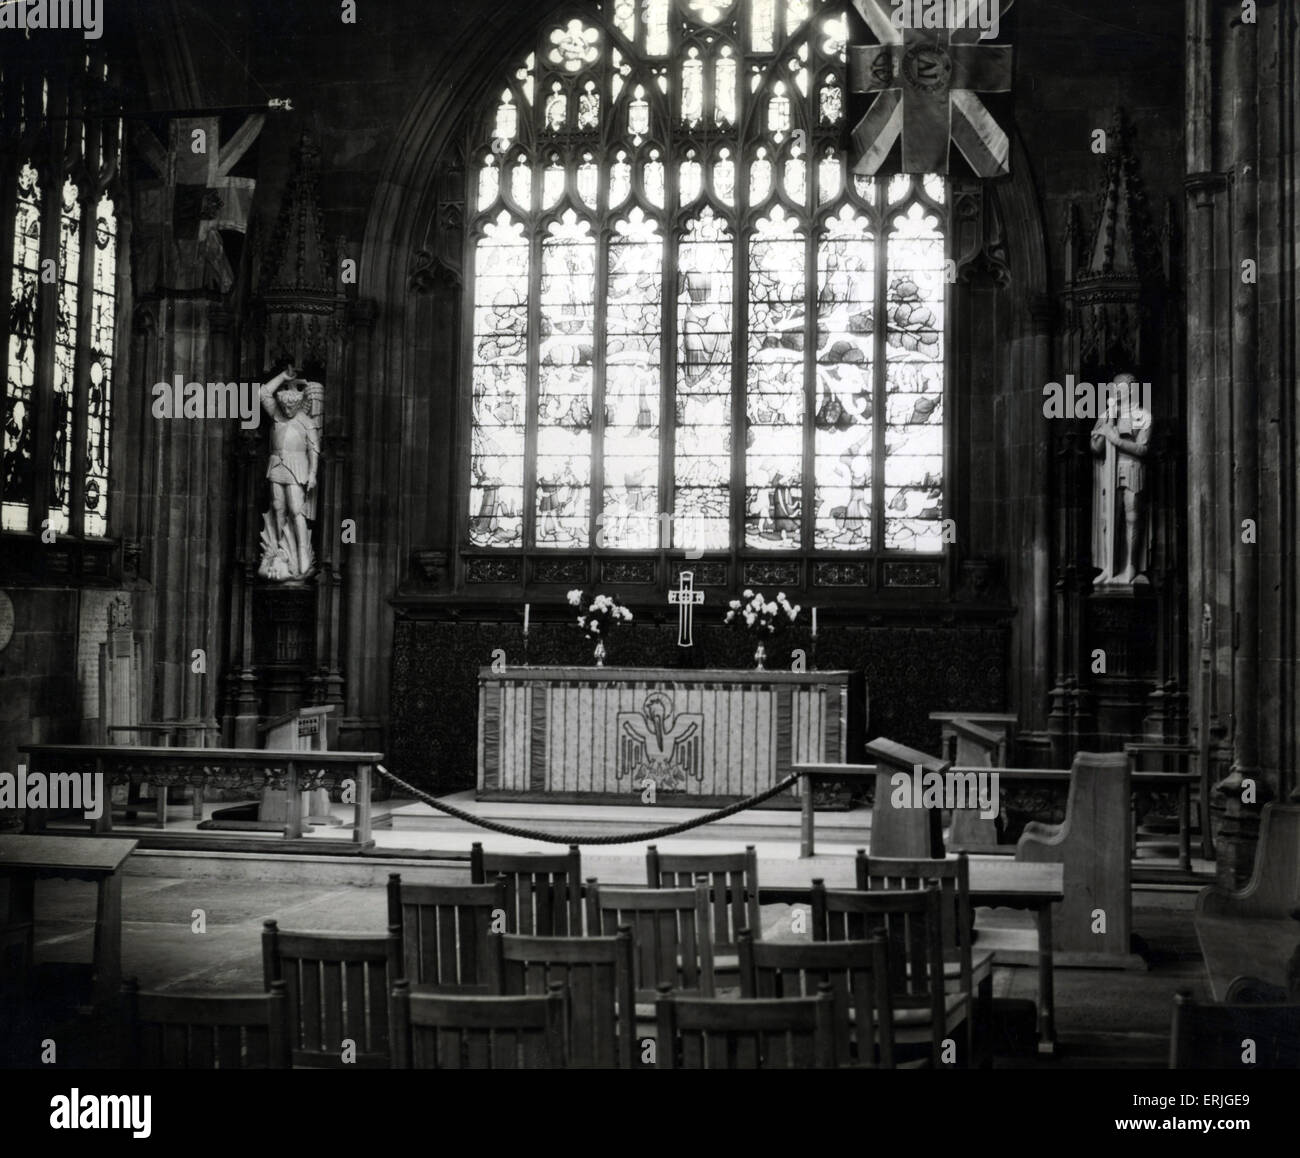 Neue Figuren von St. Michael & St George in Manchester Cathedral, 11. November 1938. Manchester Kathedrale ist eine mittelalterliche Kirche an der Victoria Street im Zentrum von Manchester, Sitz des Bischofs von Manchester. Der offizielle Name ist die Kathedrale und die Stiftskirche von St. Mary, Saint-Denys und St. George in Manchester. Stockfoto